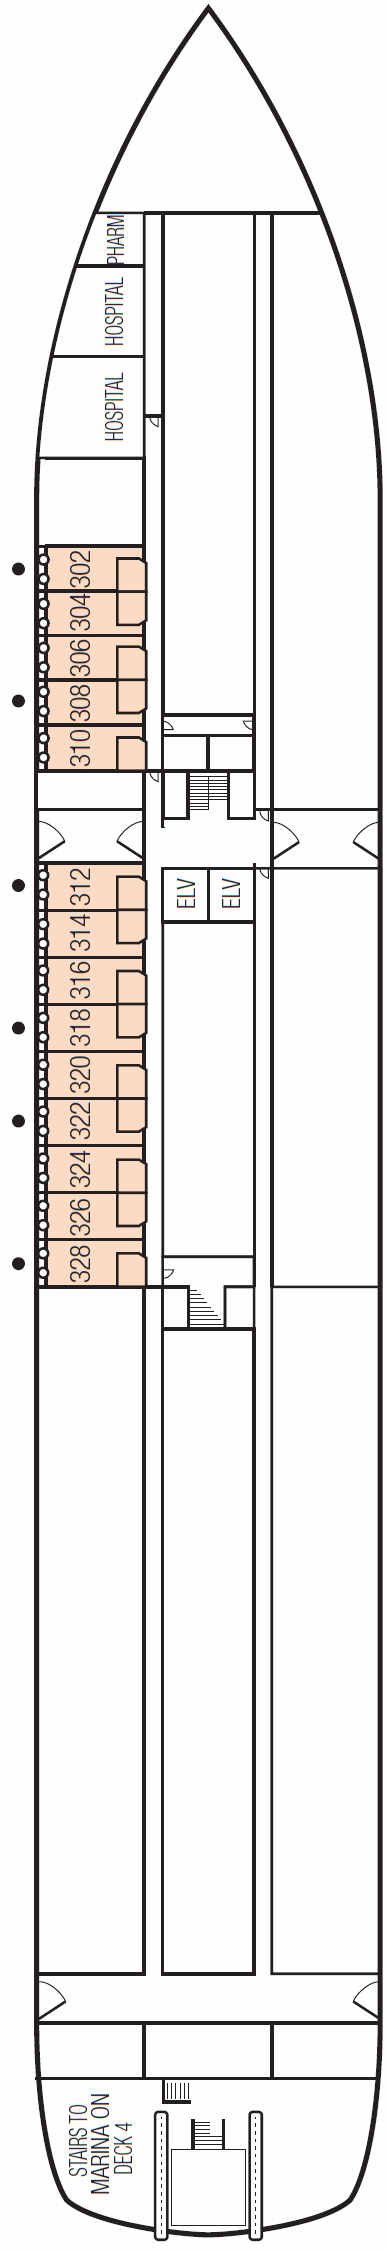 Deck 3 Deck Plan